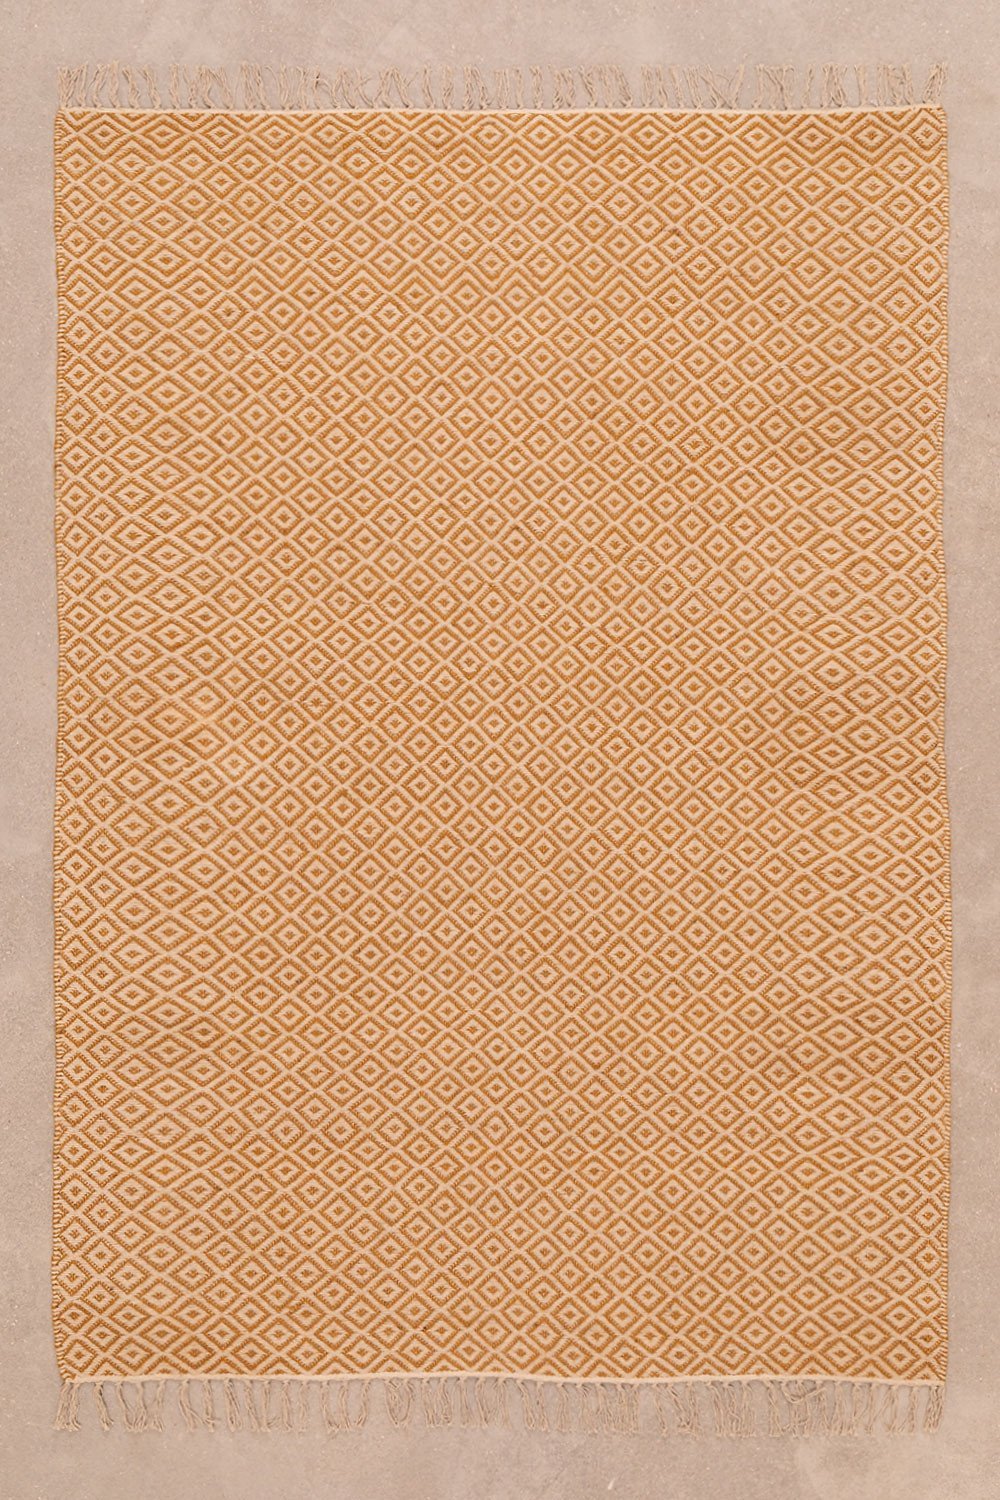 Cotton & Jute Rug (177 x 122 cm) Durat, gallery image 1